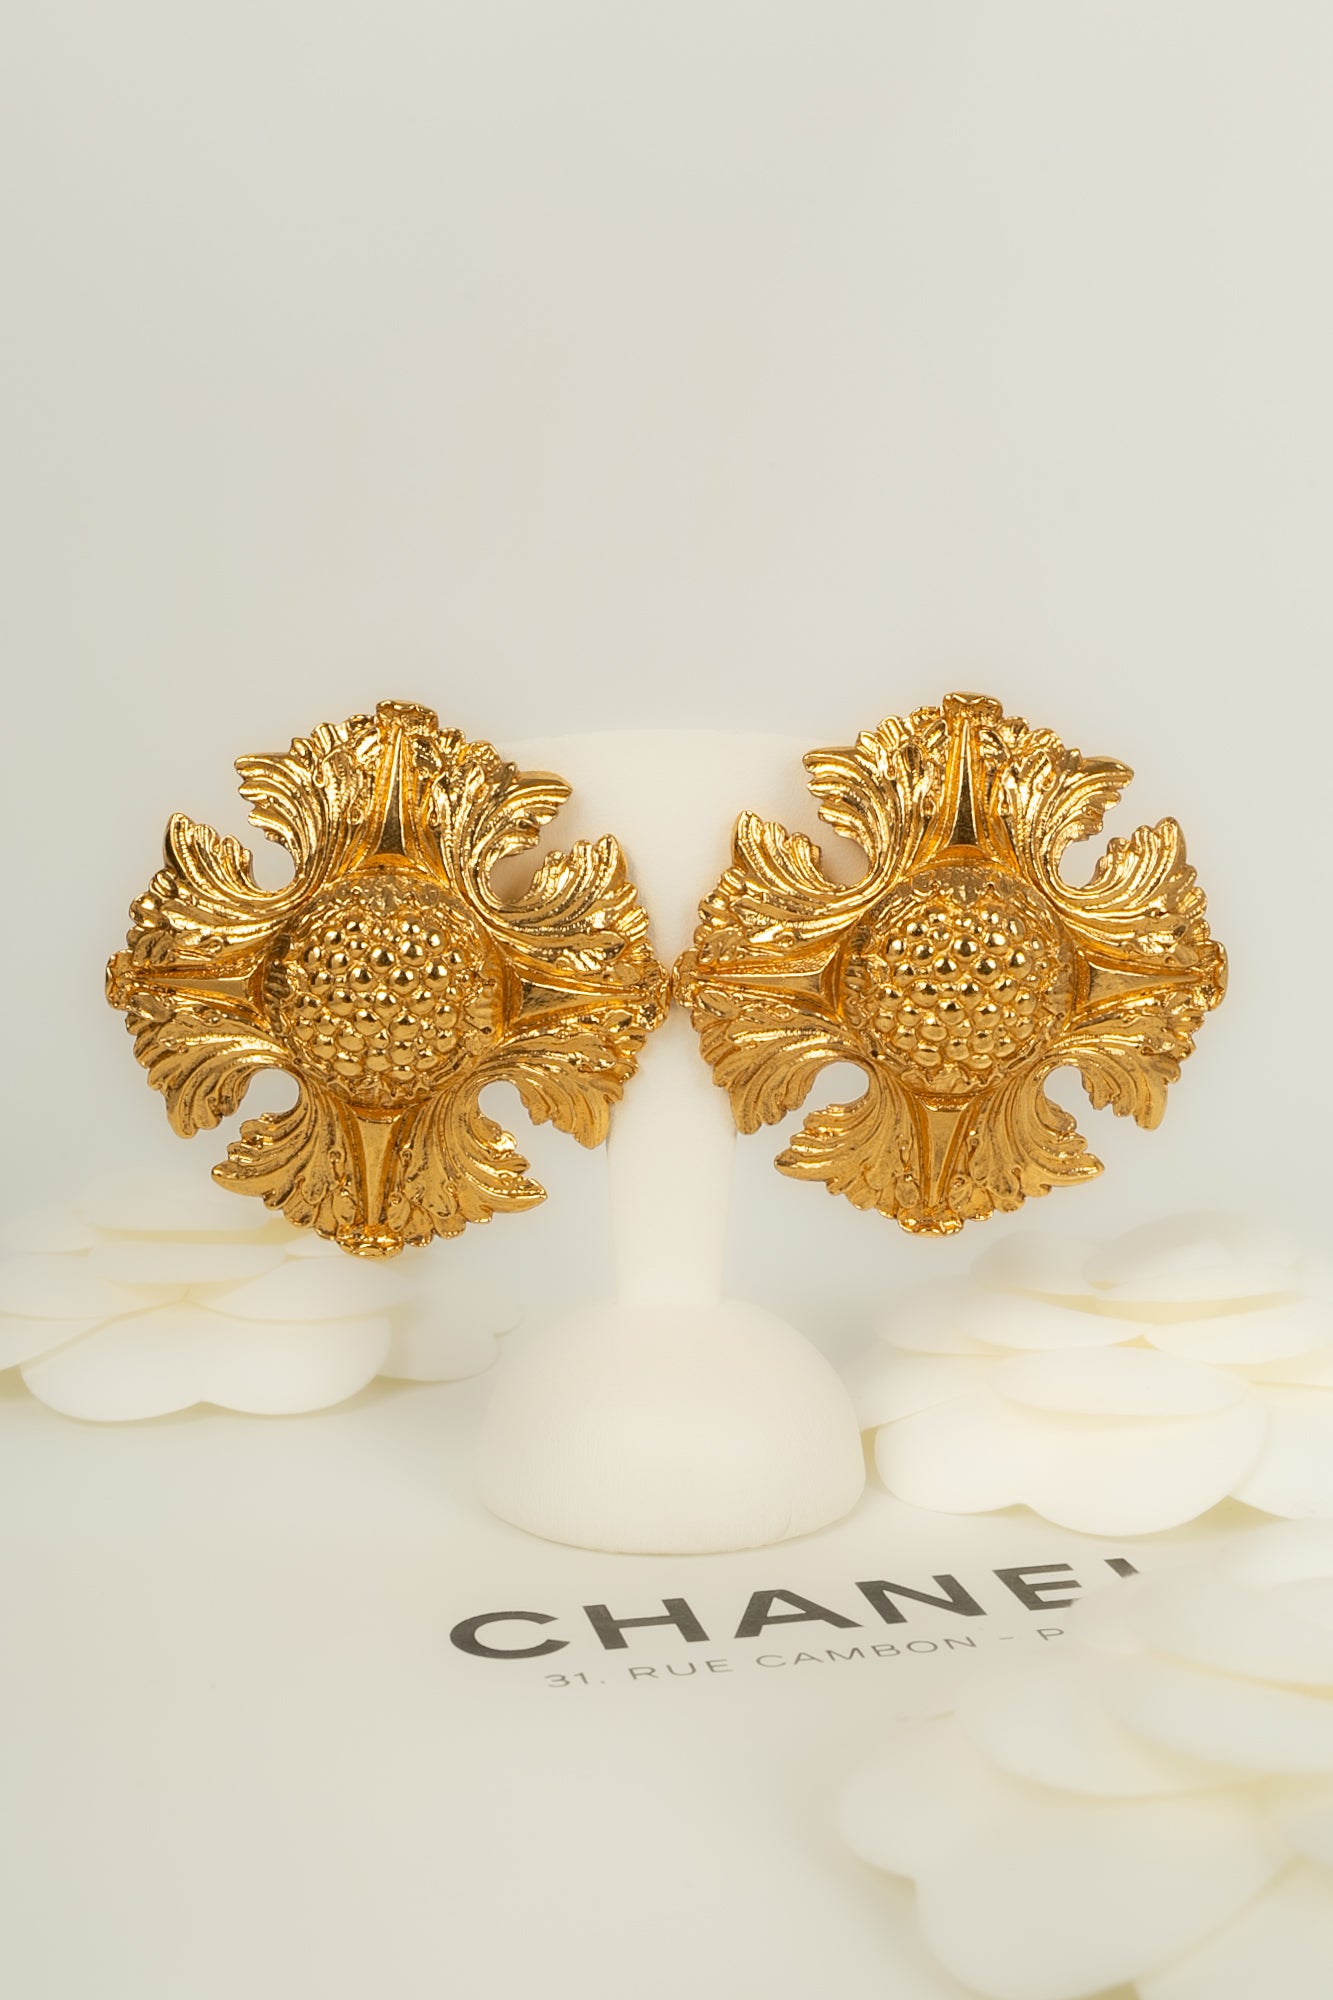 Boucles d'oreilles dorées Chanel